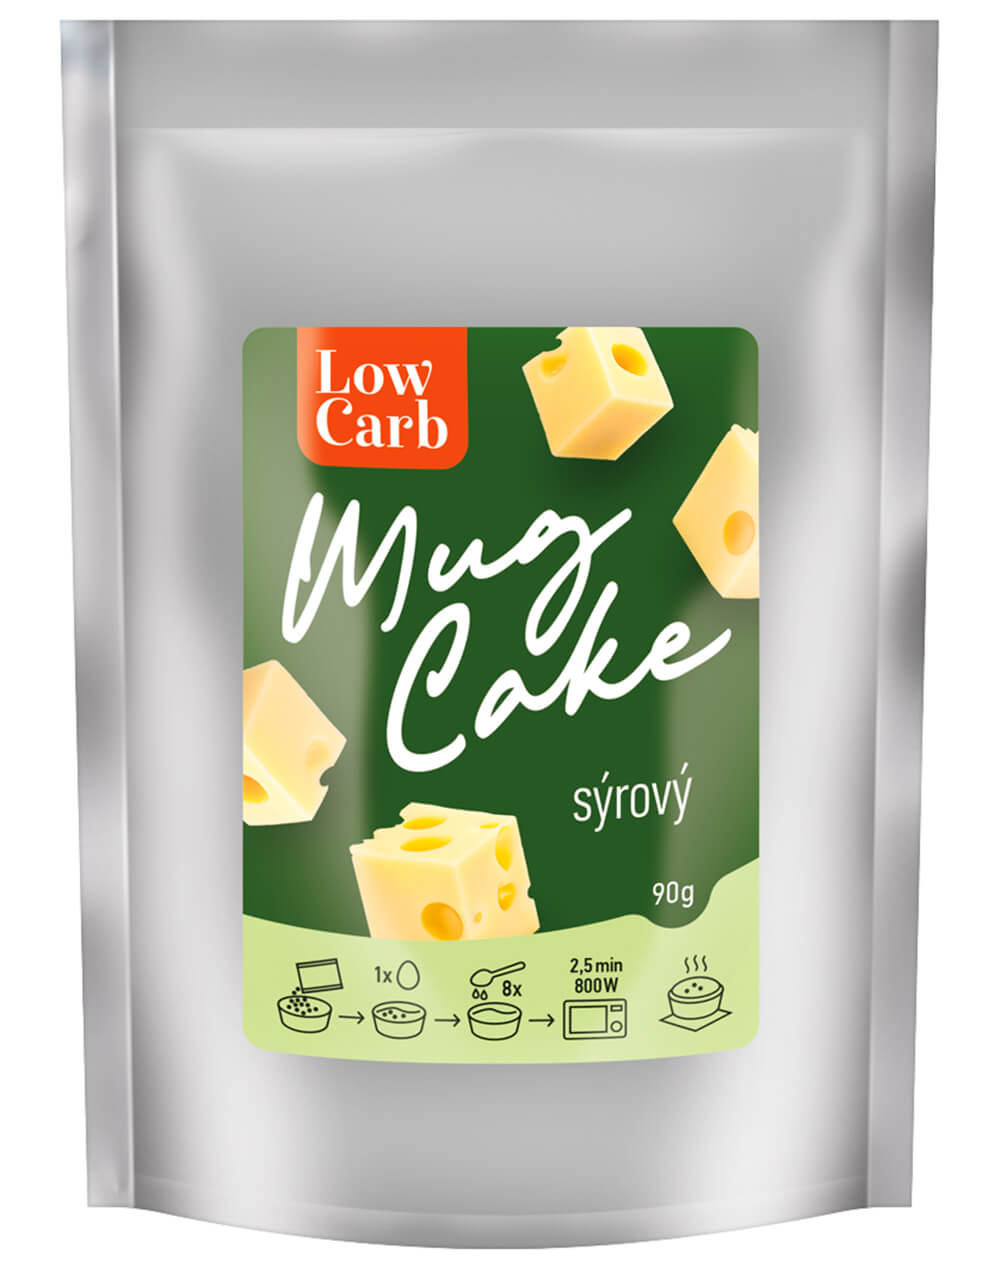 MKM Pack Low carb mug cake sýrový 90g